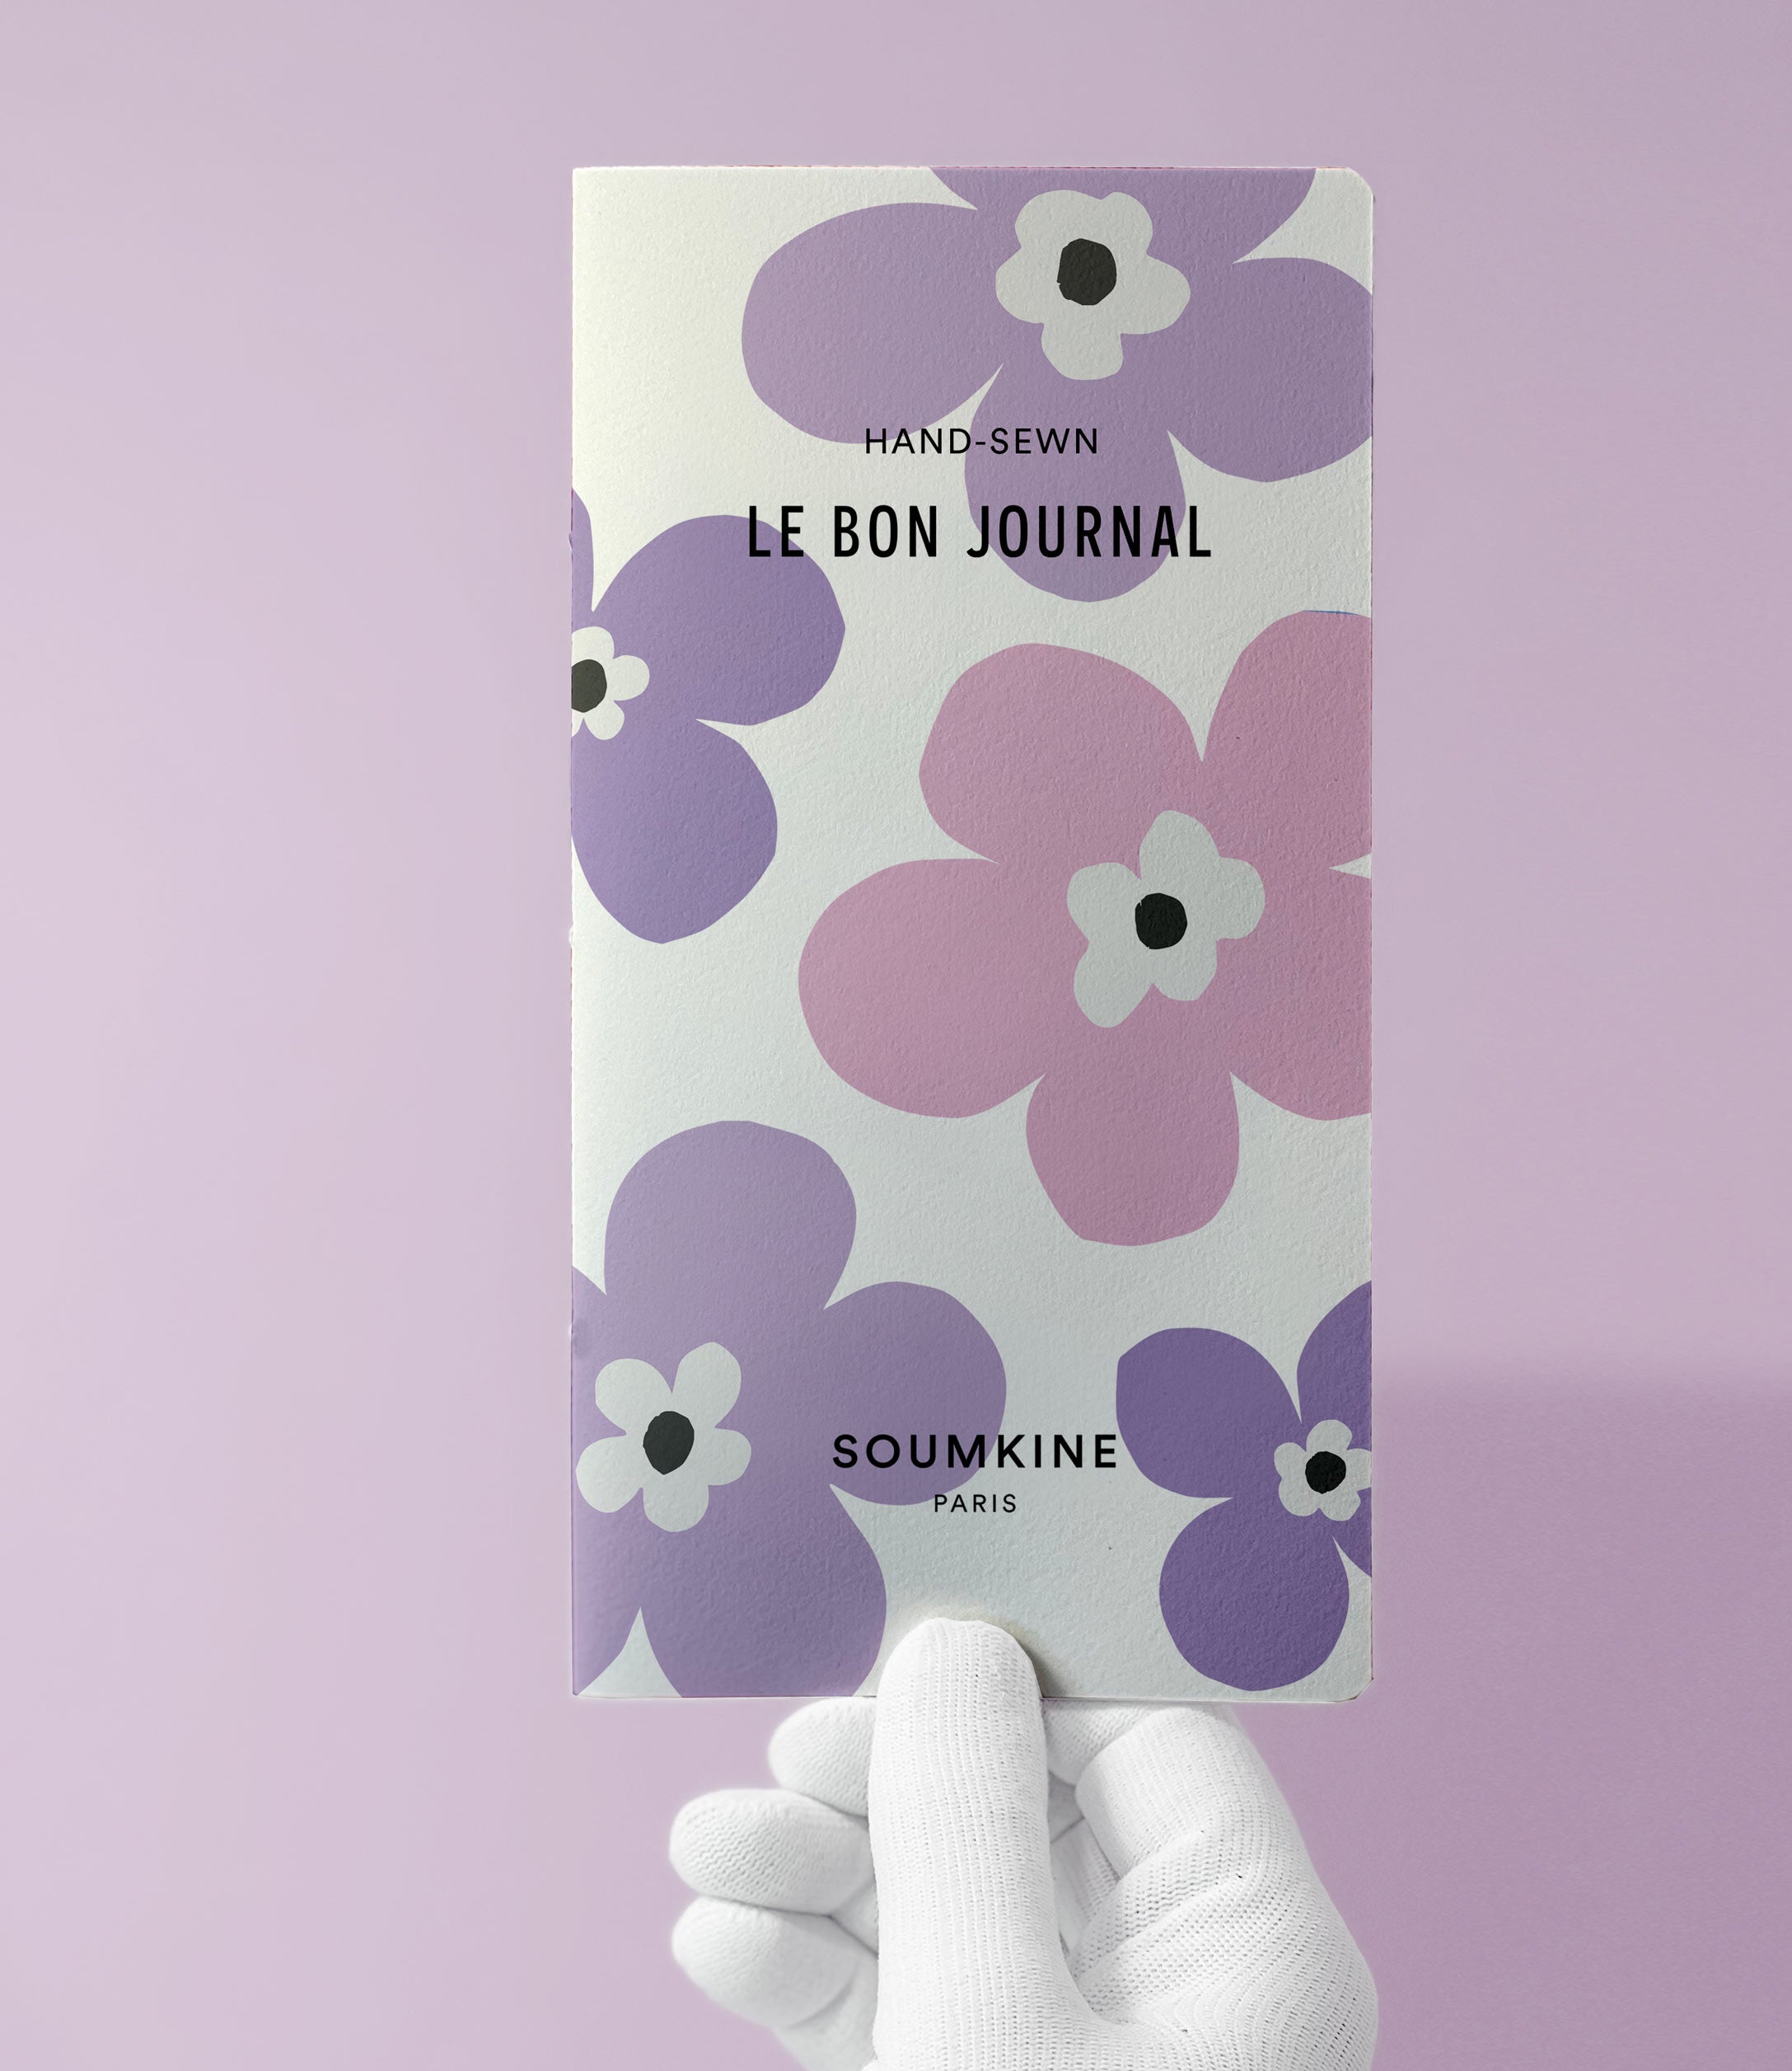 Le Bon Journal. Lavender Edition. Slim size.